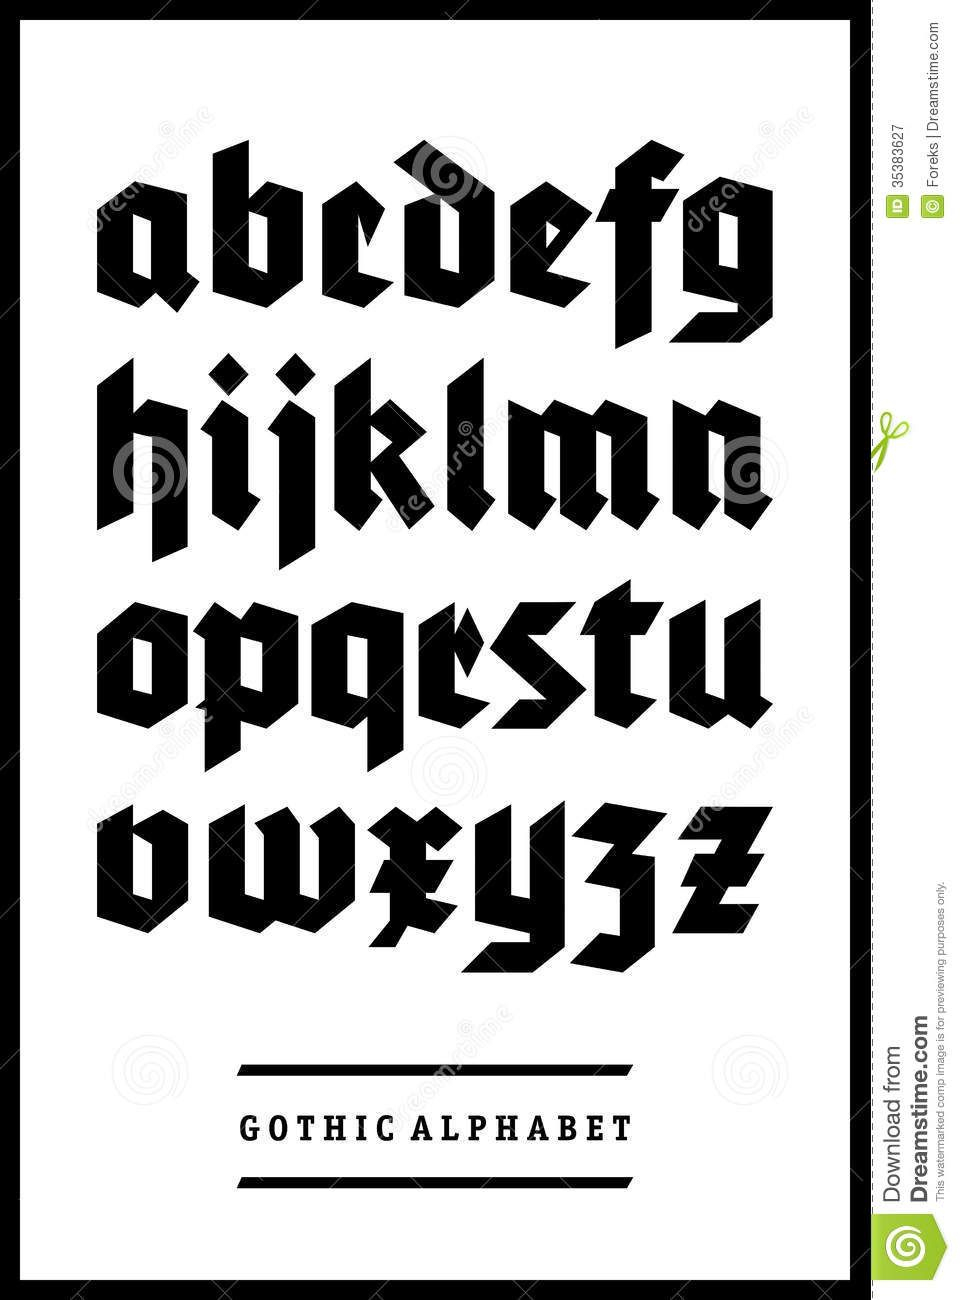 German Gothic Font - Google Search (Mit Bildern) | Schriften in Gotische Buchstaben